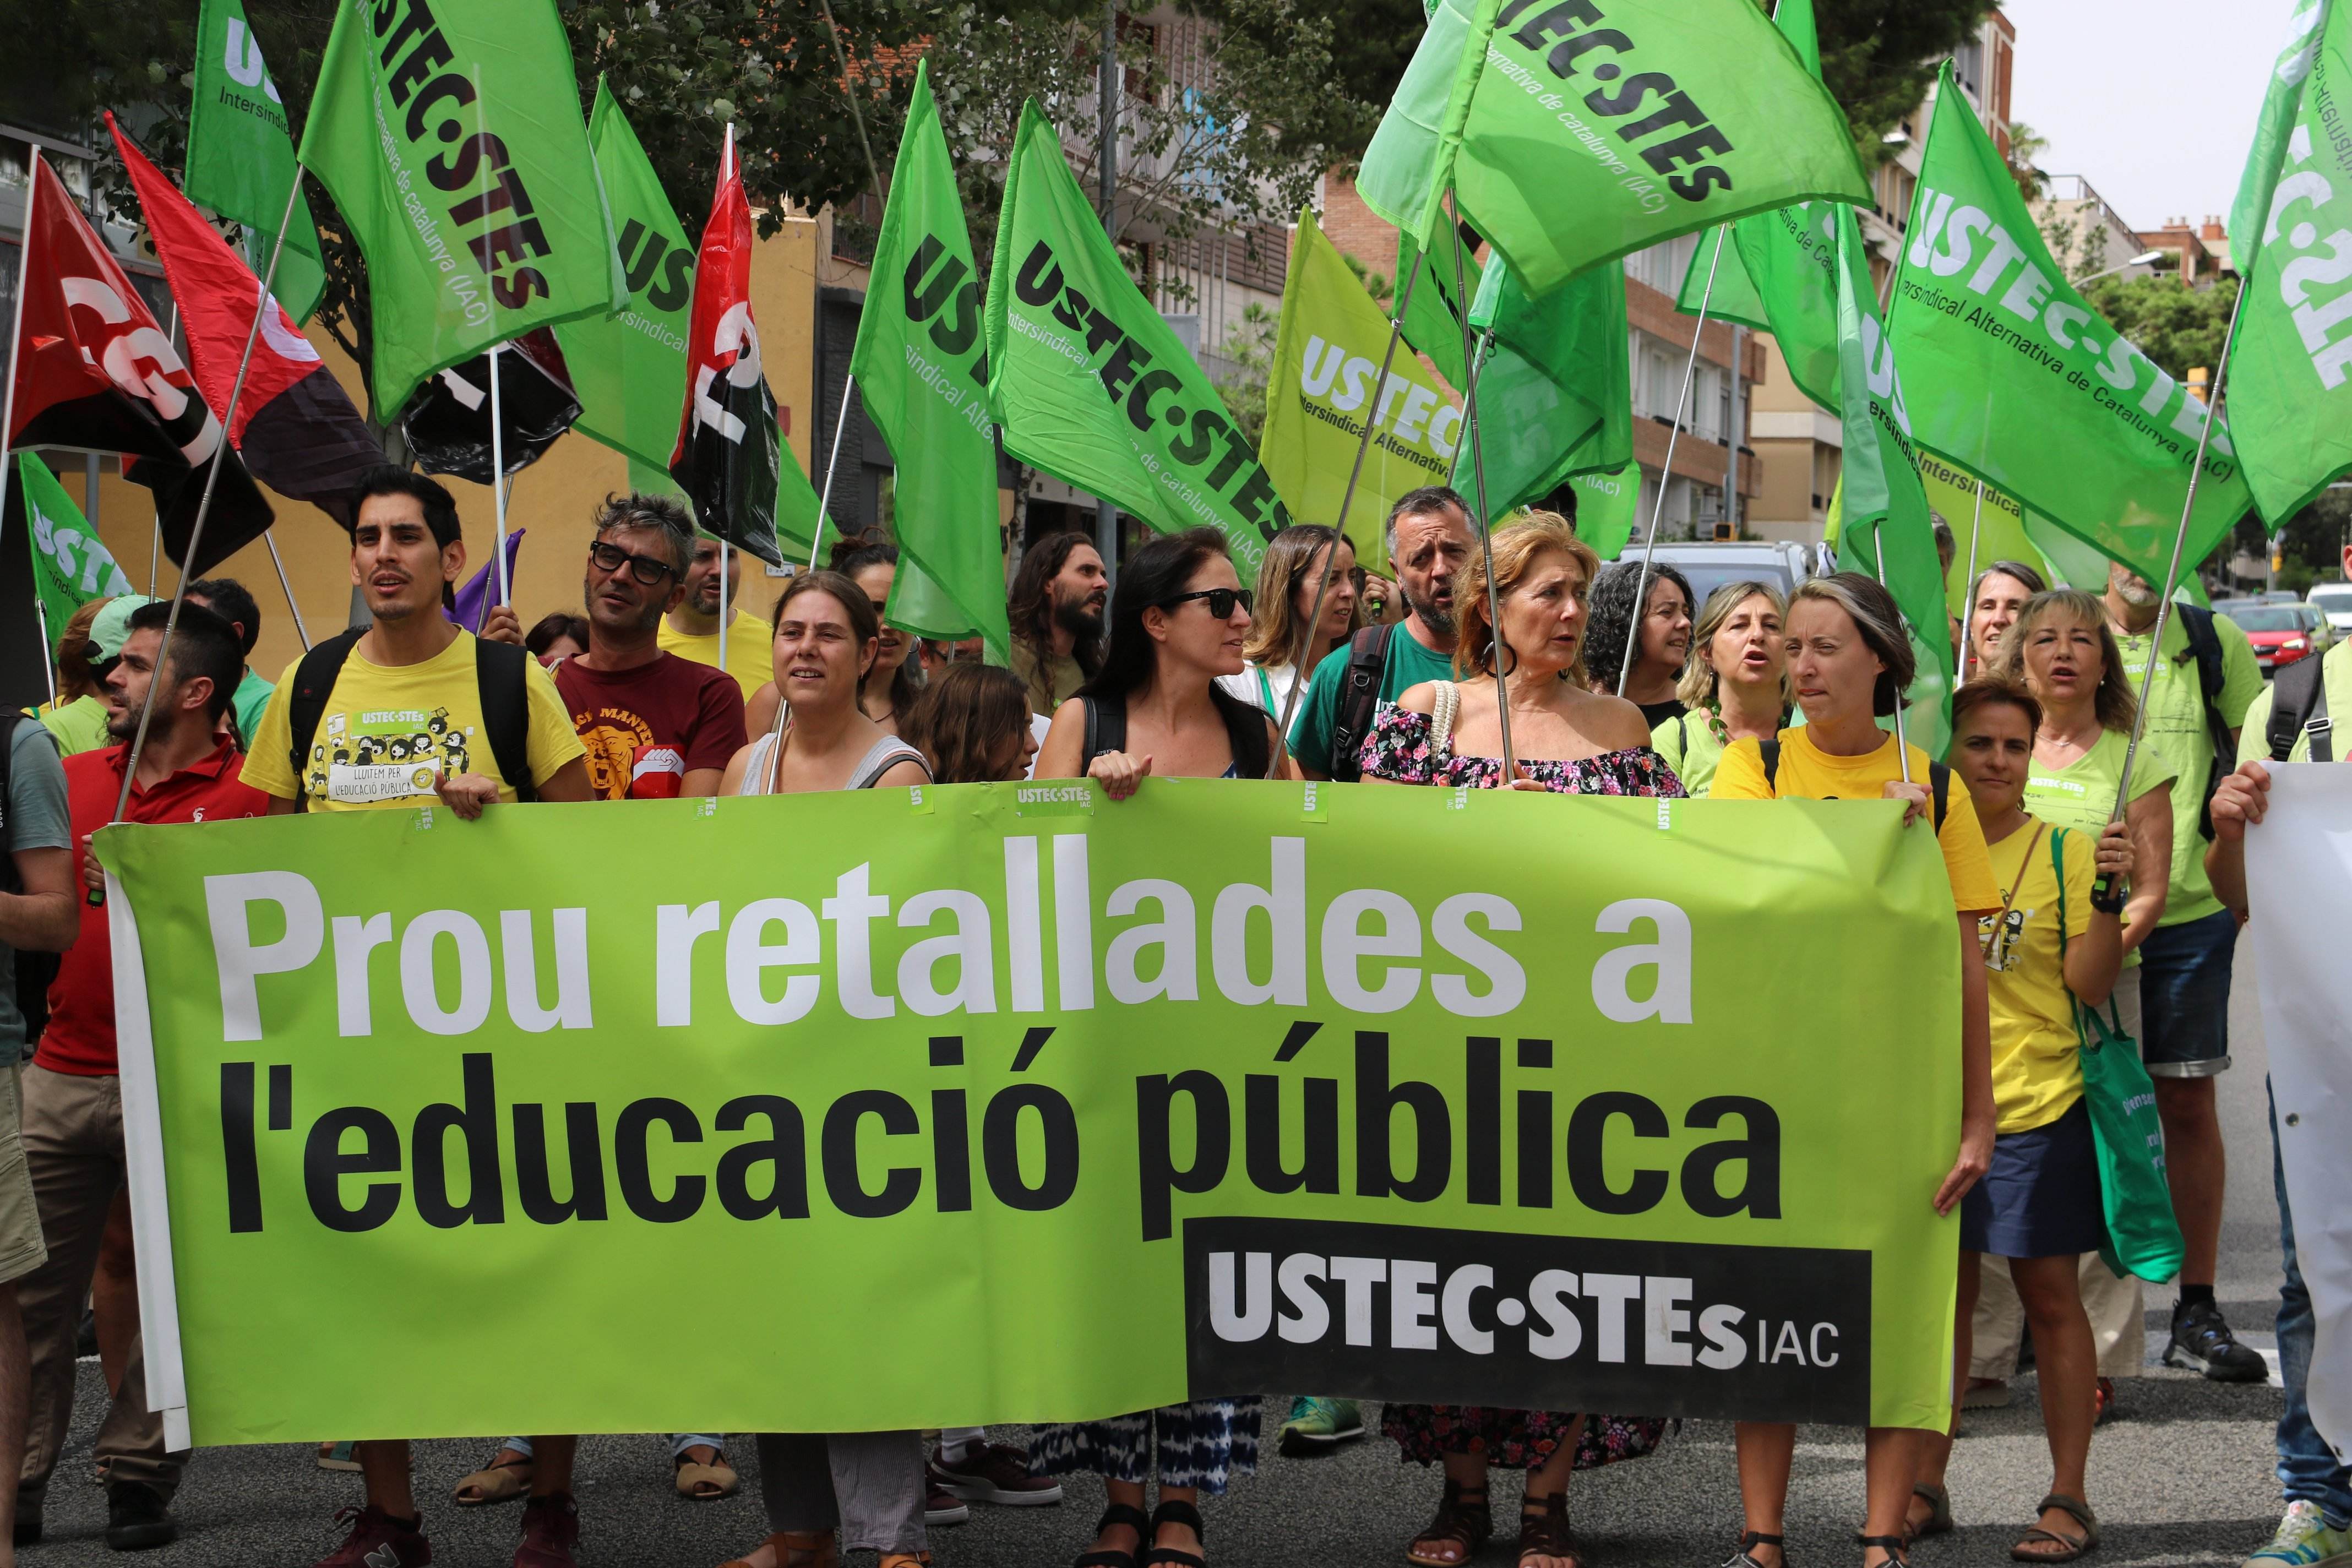 Los sindicatos educativos mantienen la huelga convocada el primer día de curso y reclaman "negociar"